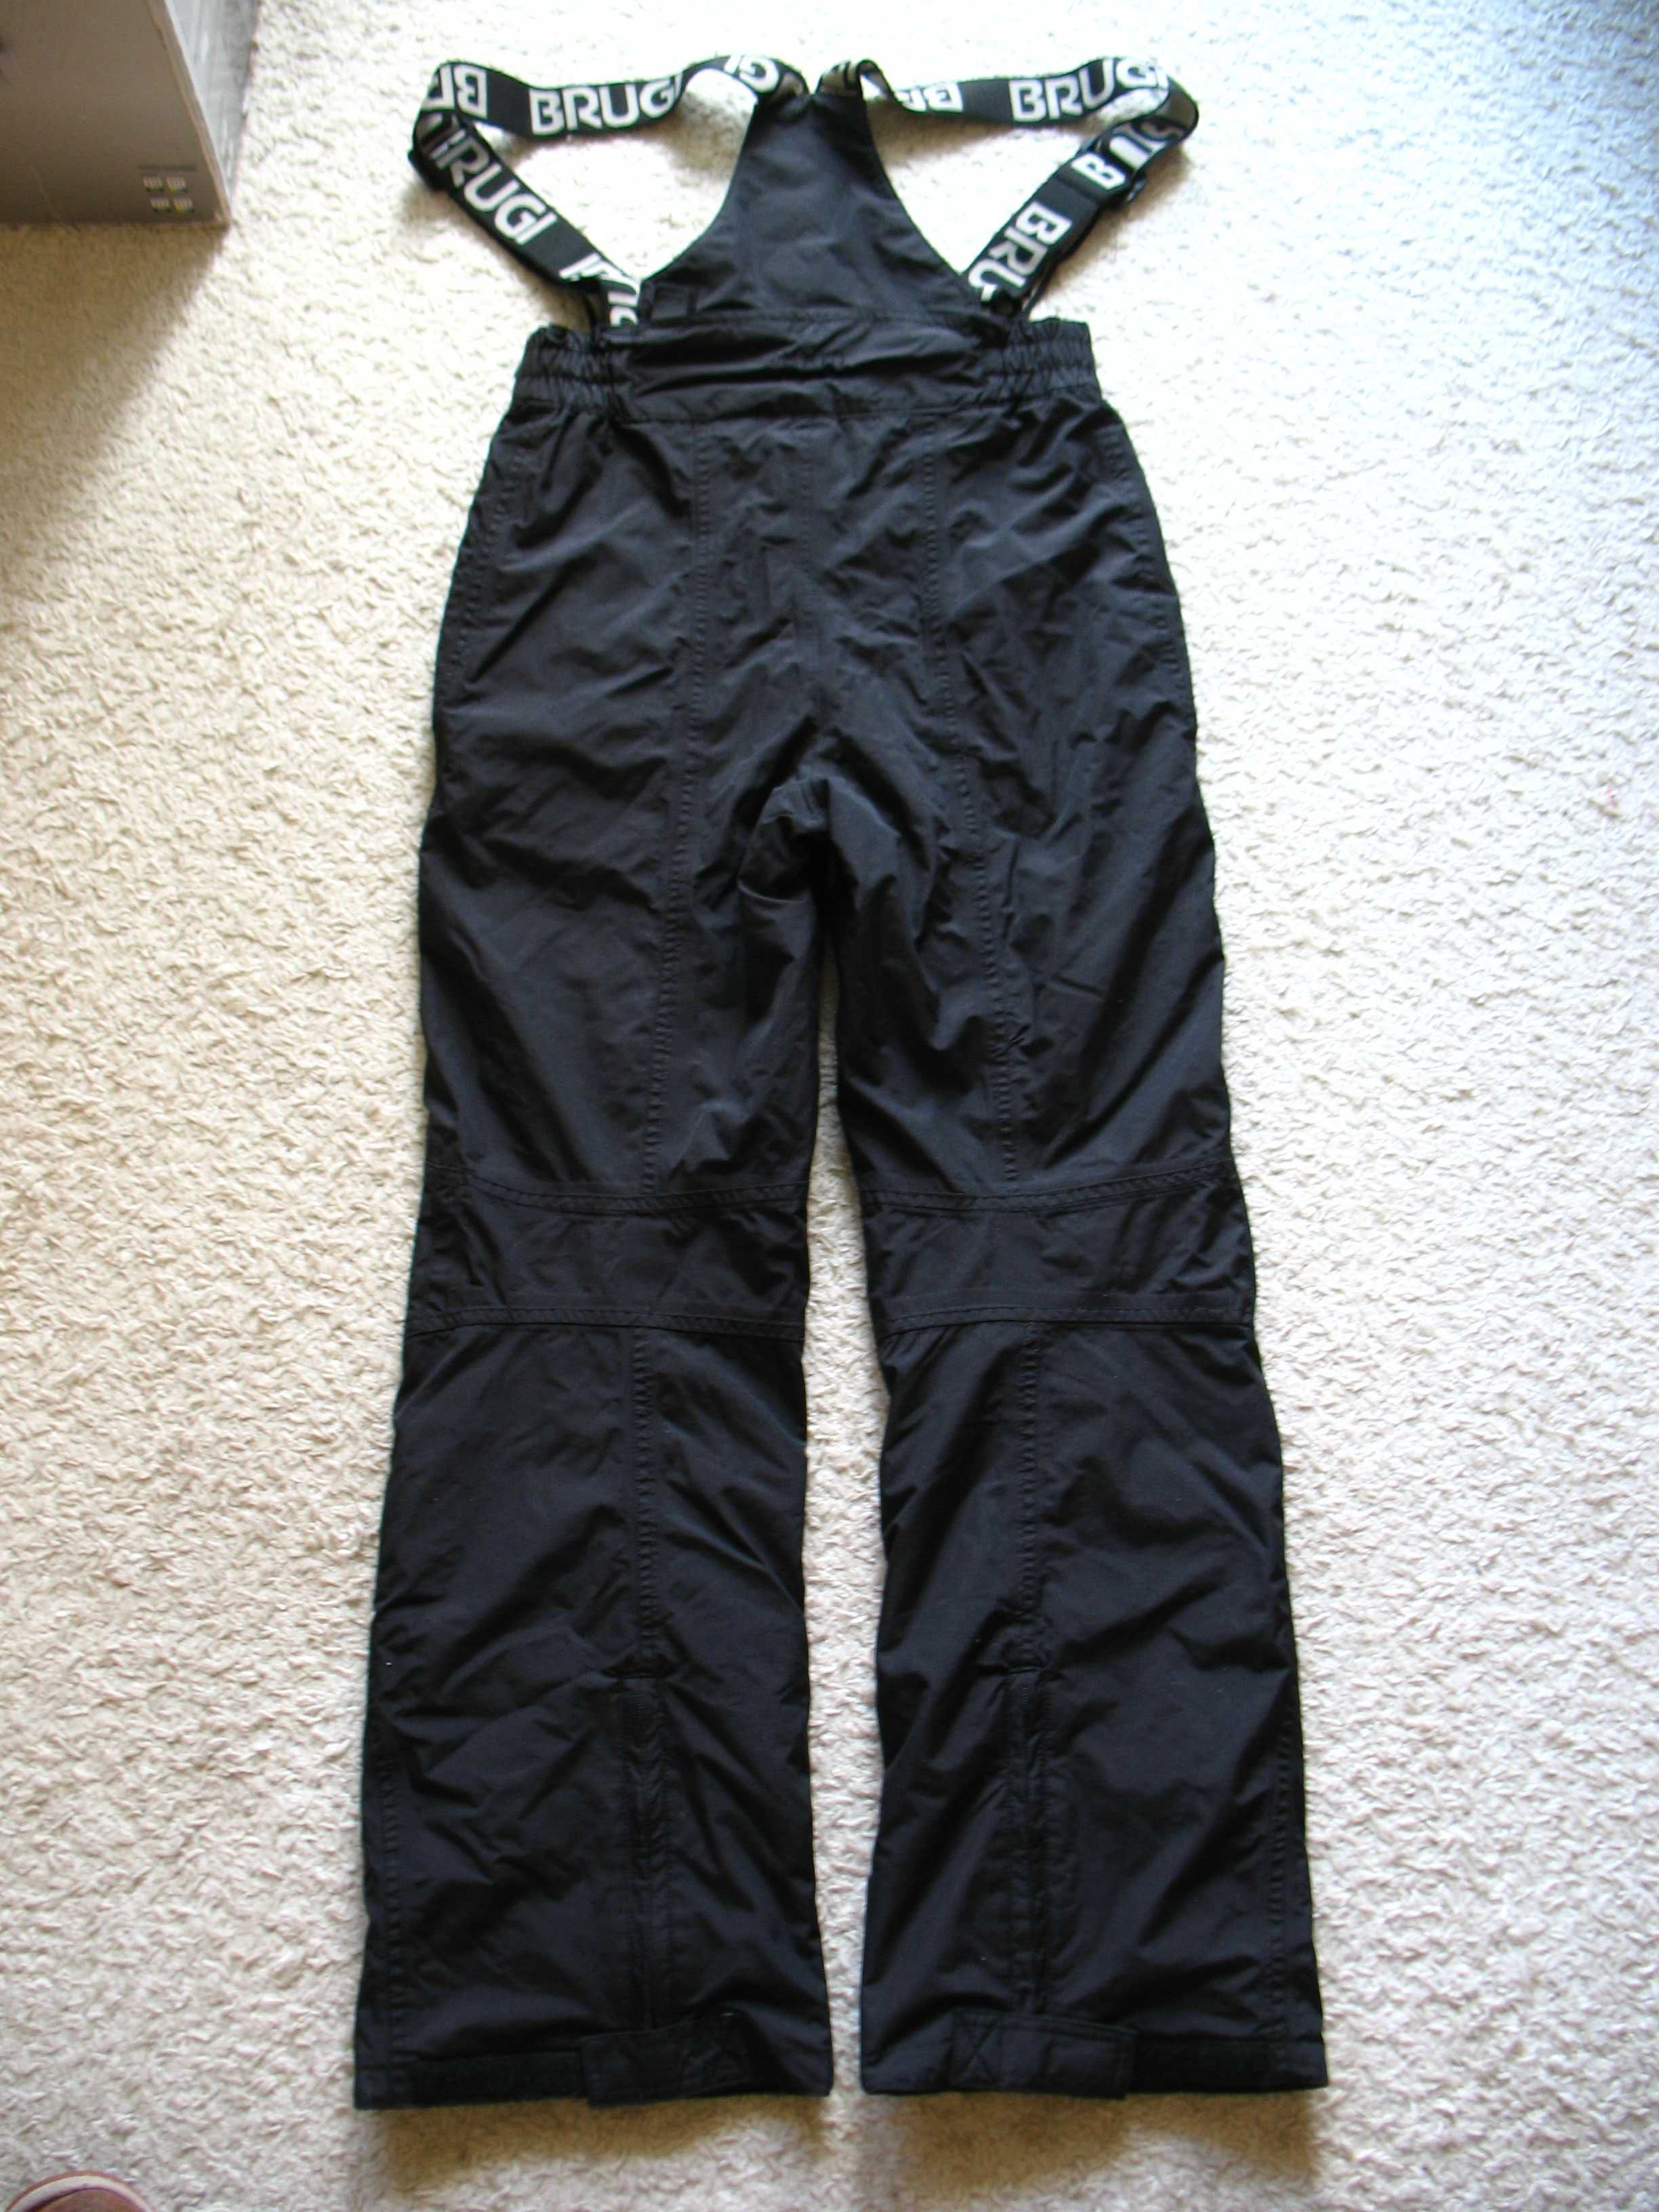 Spodnie zimowe Brugi 3000 by Tex, narty, snowboard. Rozmiar 164 cm